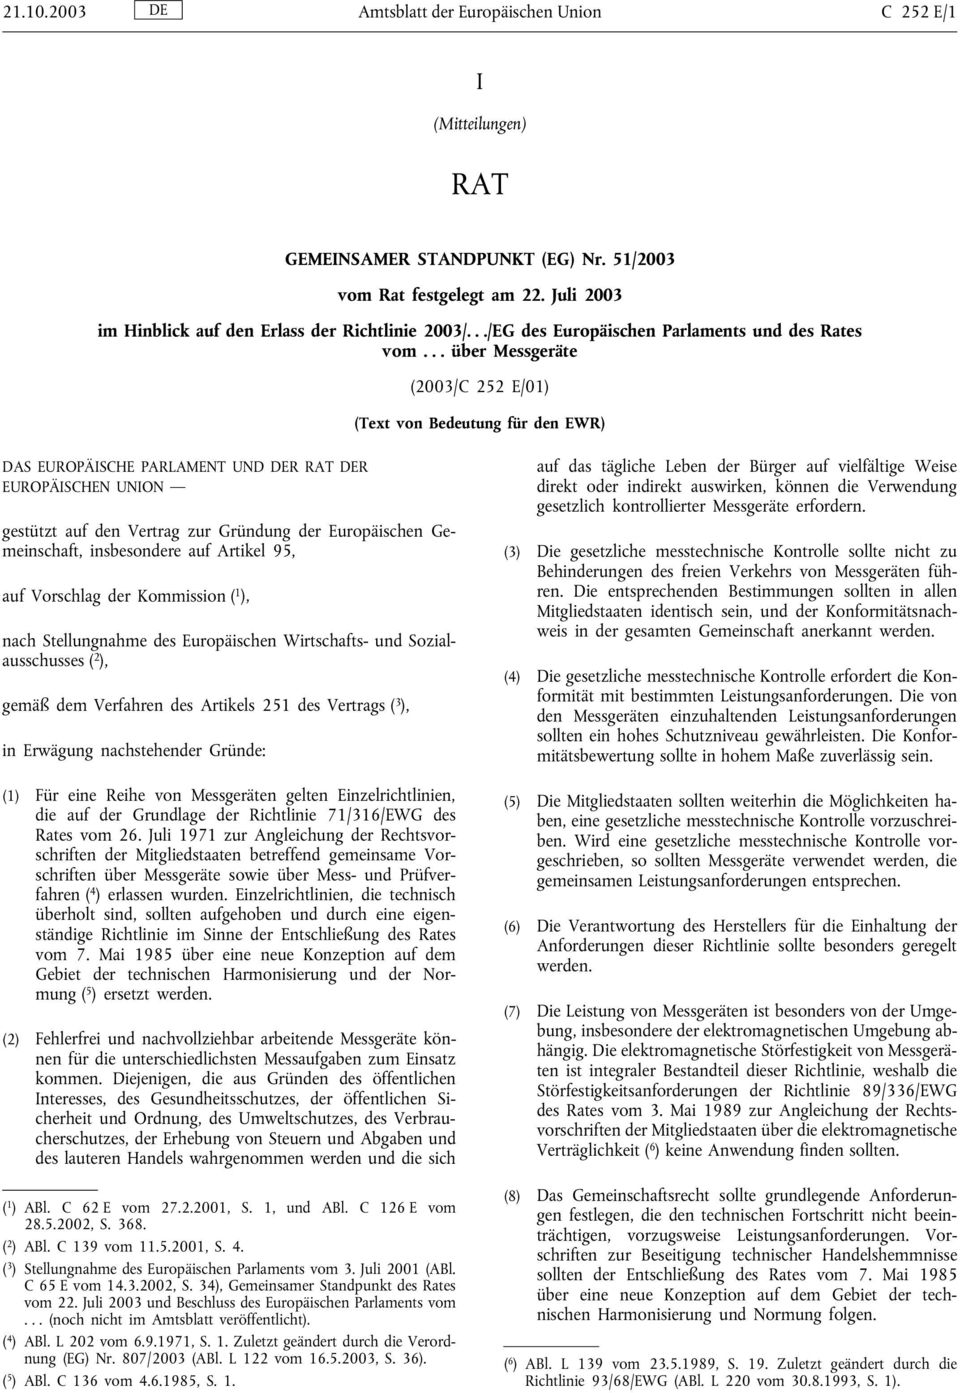 .. über Messgeräte (2003/C 252 E/01) (Text von Bedeutung für den EWR) DAS EUROPÄISCHE PARLAMENT UND DER RAT DER EUROPÄISCHEN UNION gestützt auf den Vertrag zur Gründung der Europäischen Gemeinschaft,